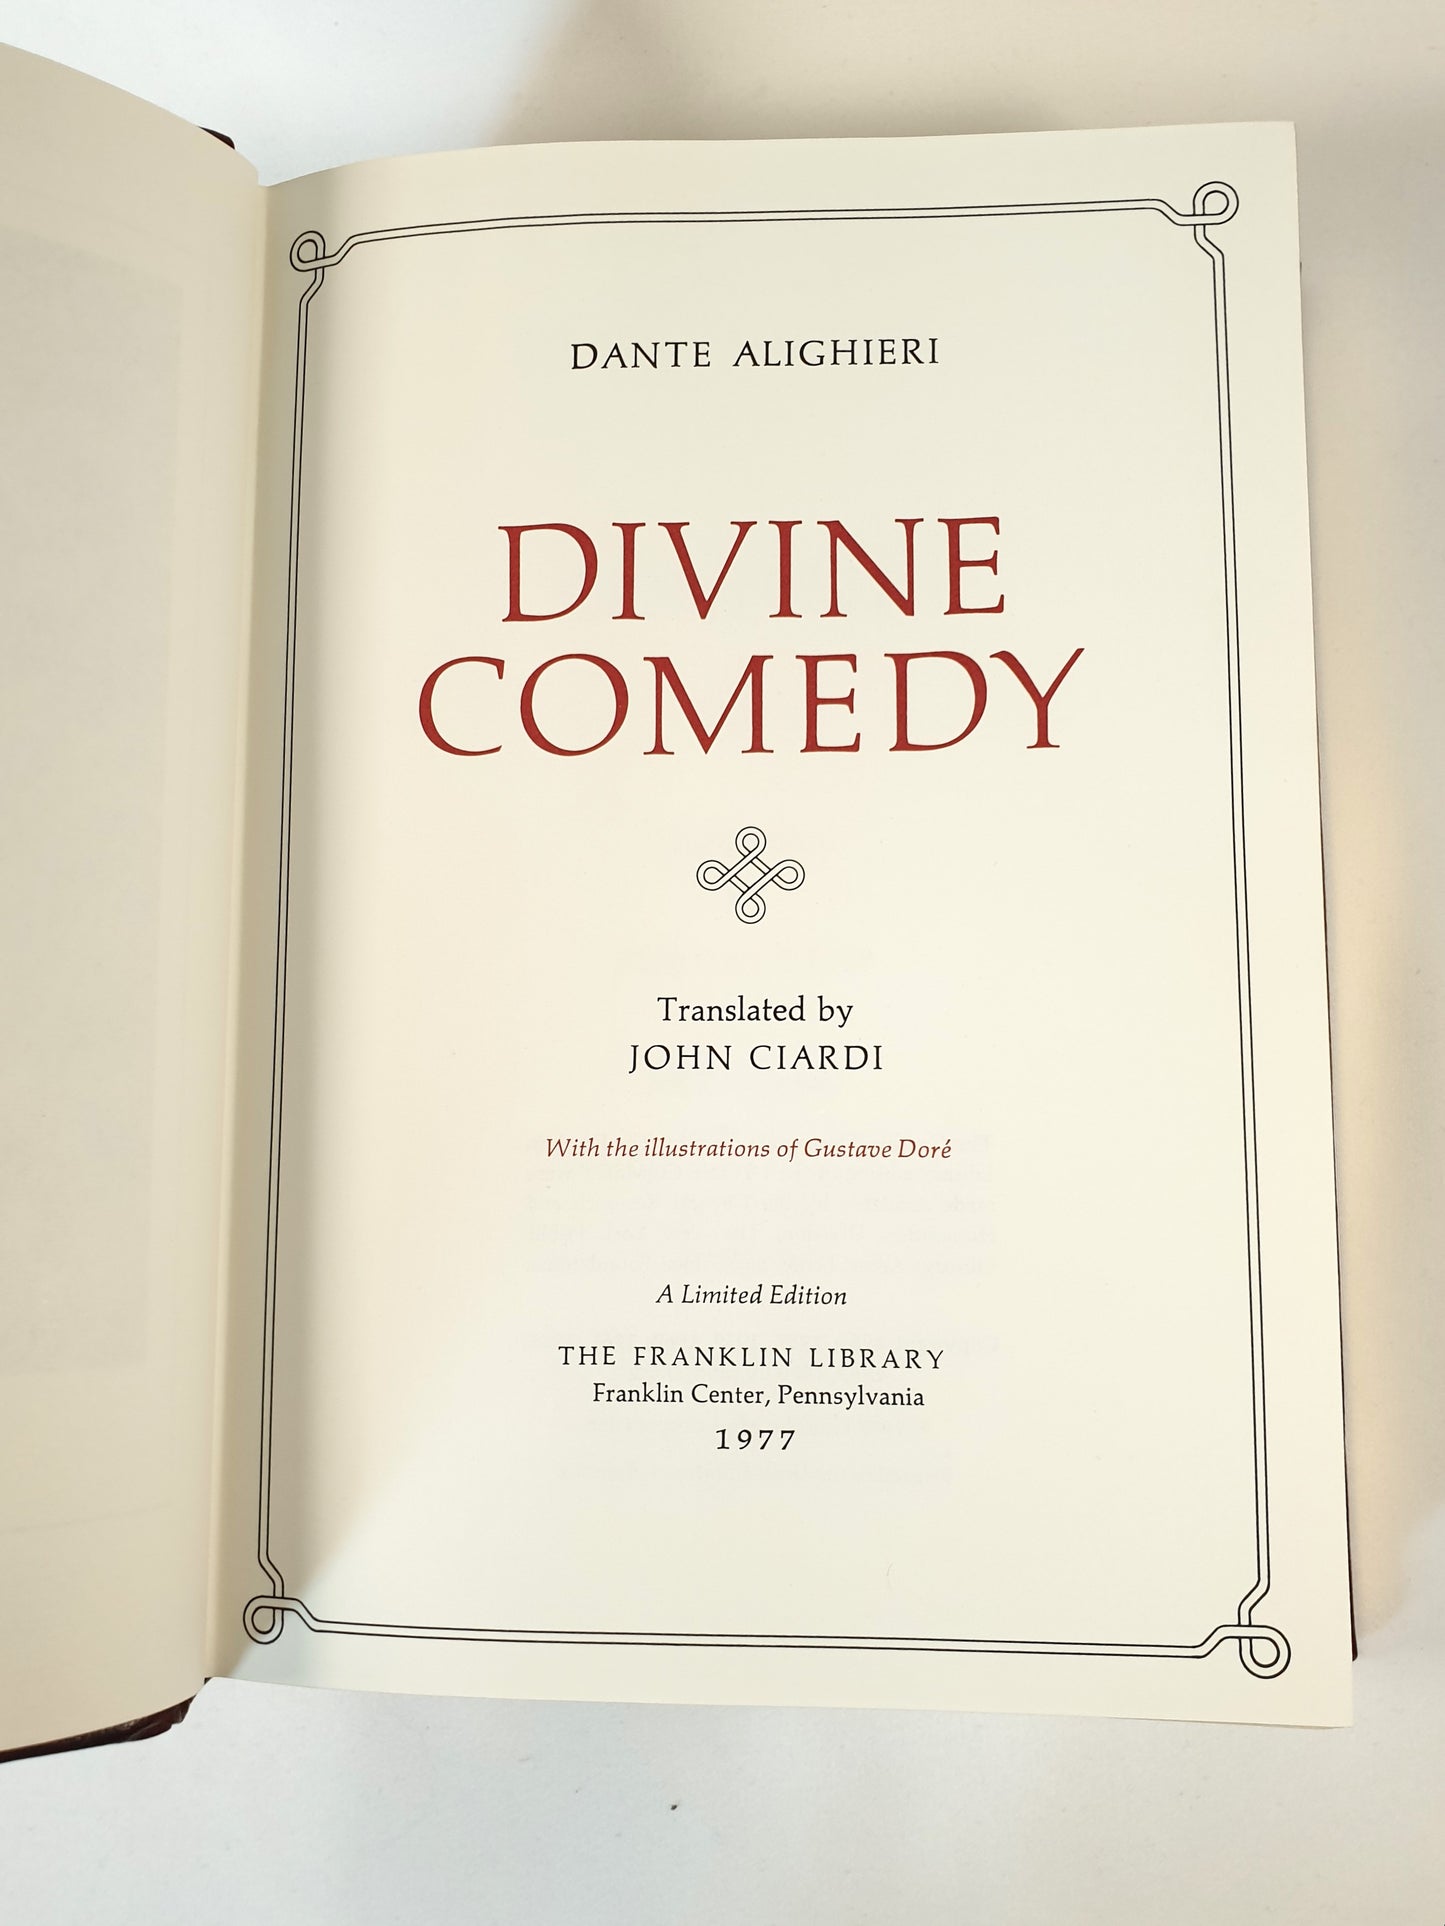 Alighieri, Dante - The Divine Comedy